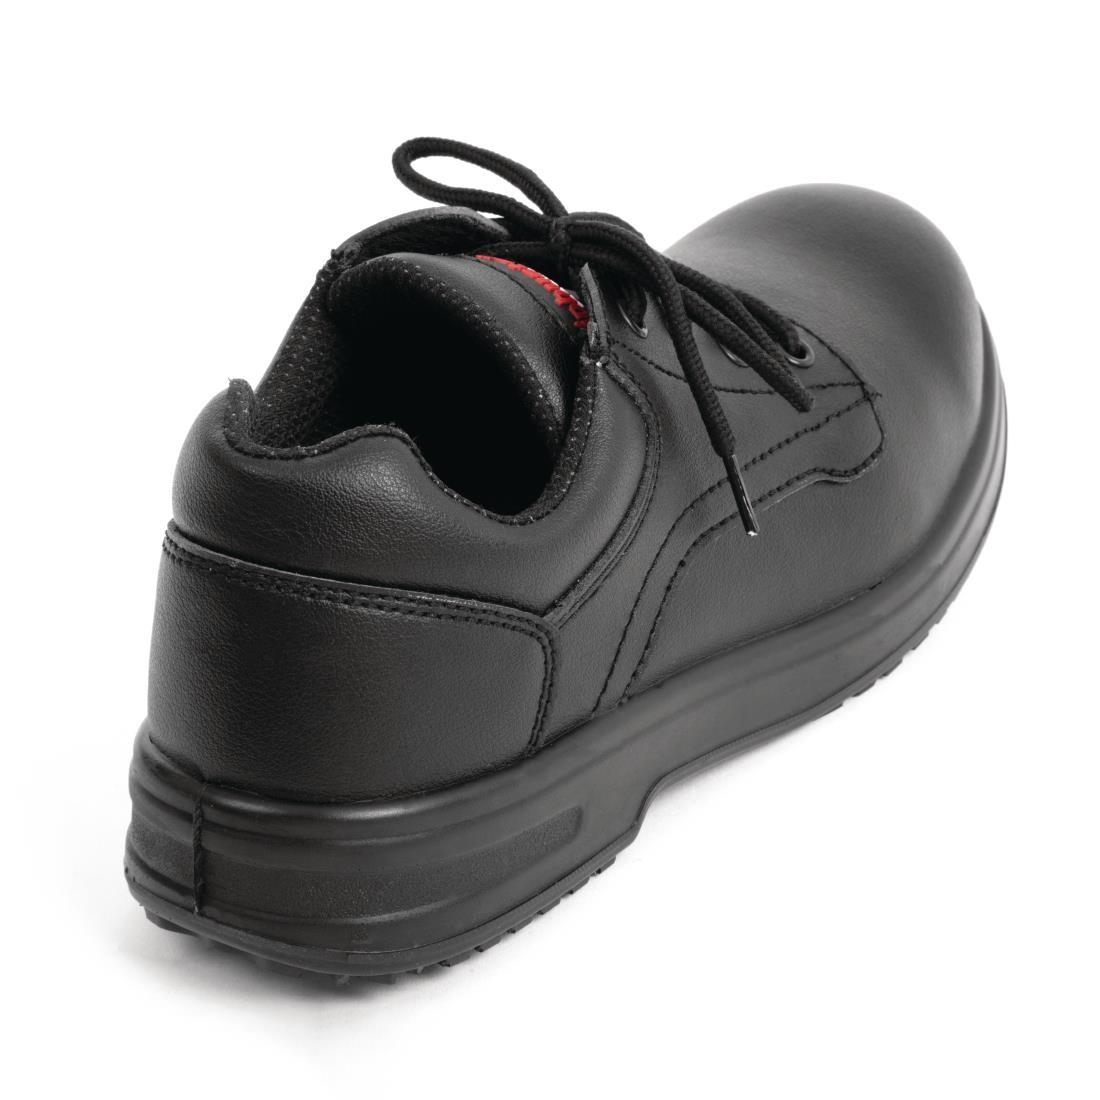 Slipbuster Basic Shoes Slip Resistant Black 42 - BB498-42  - 3